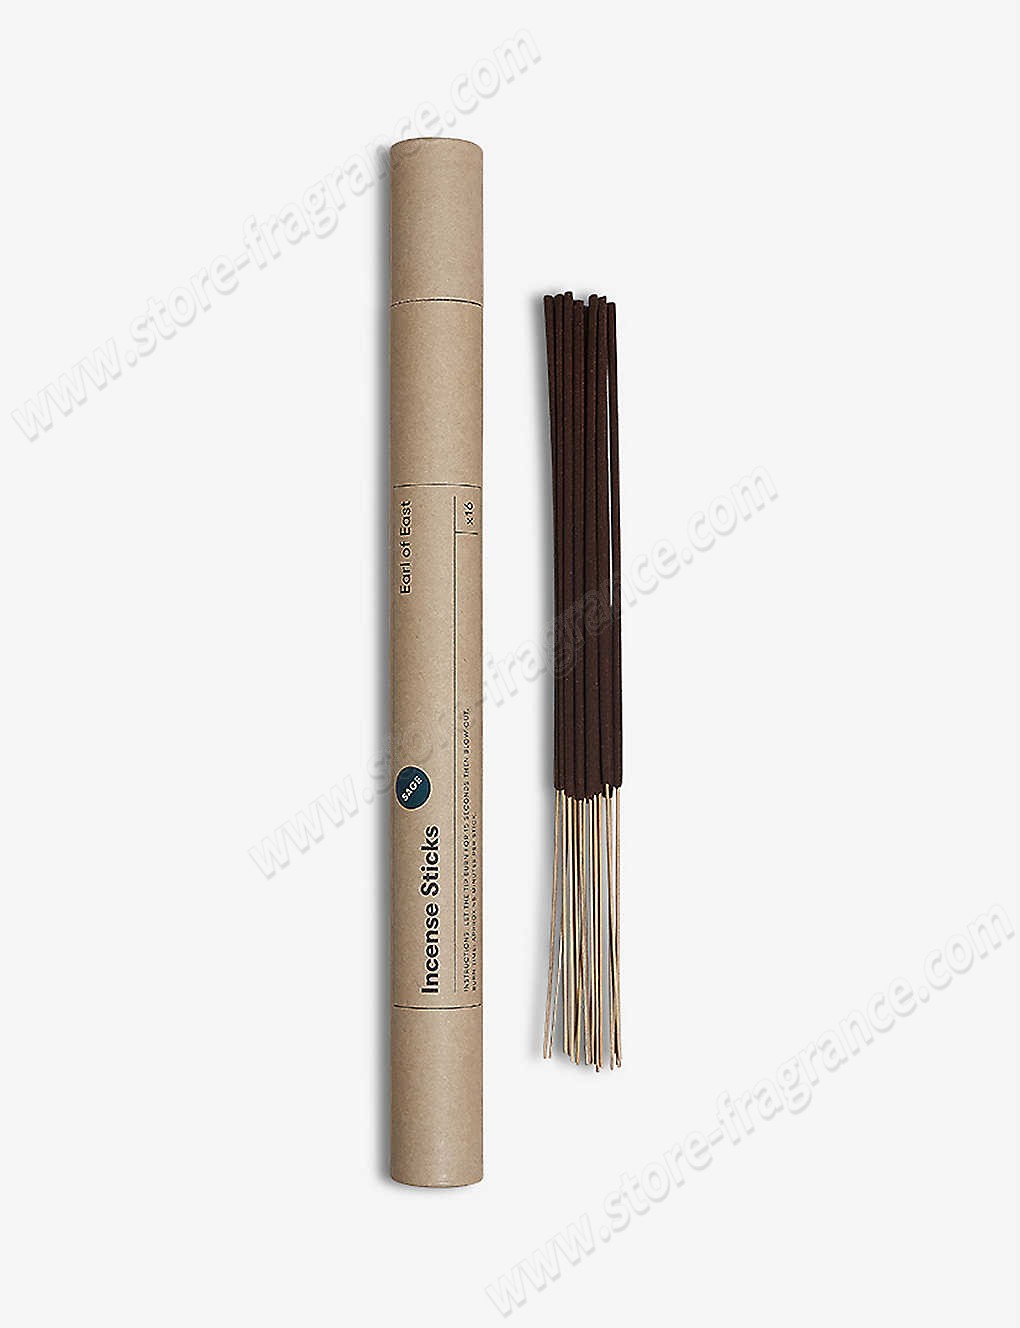 EARL OF EAST/Sage incense sticks pack of 16 Limit Offer - -0